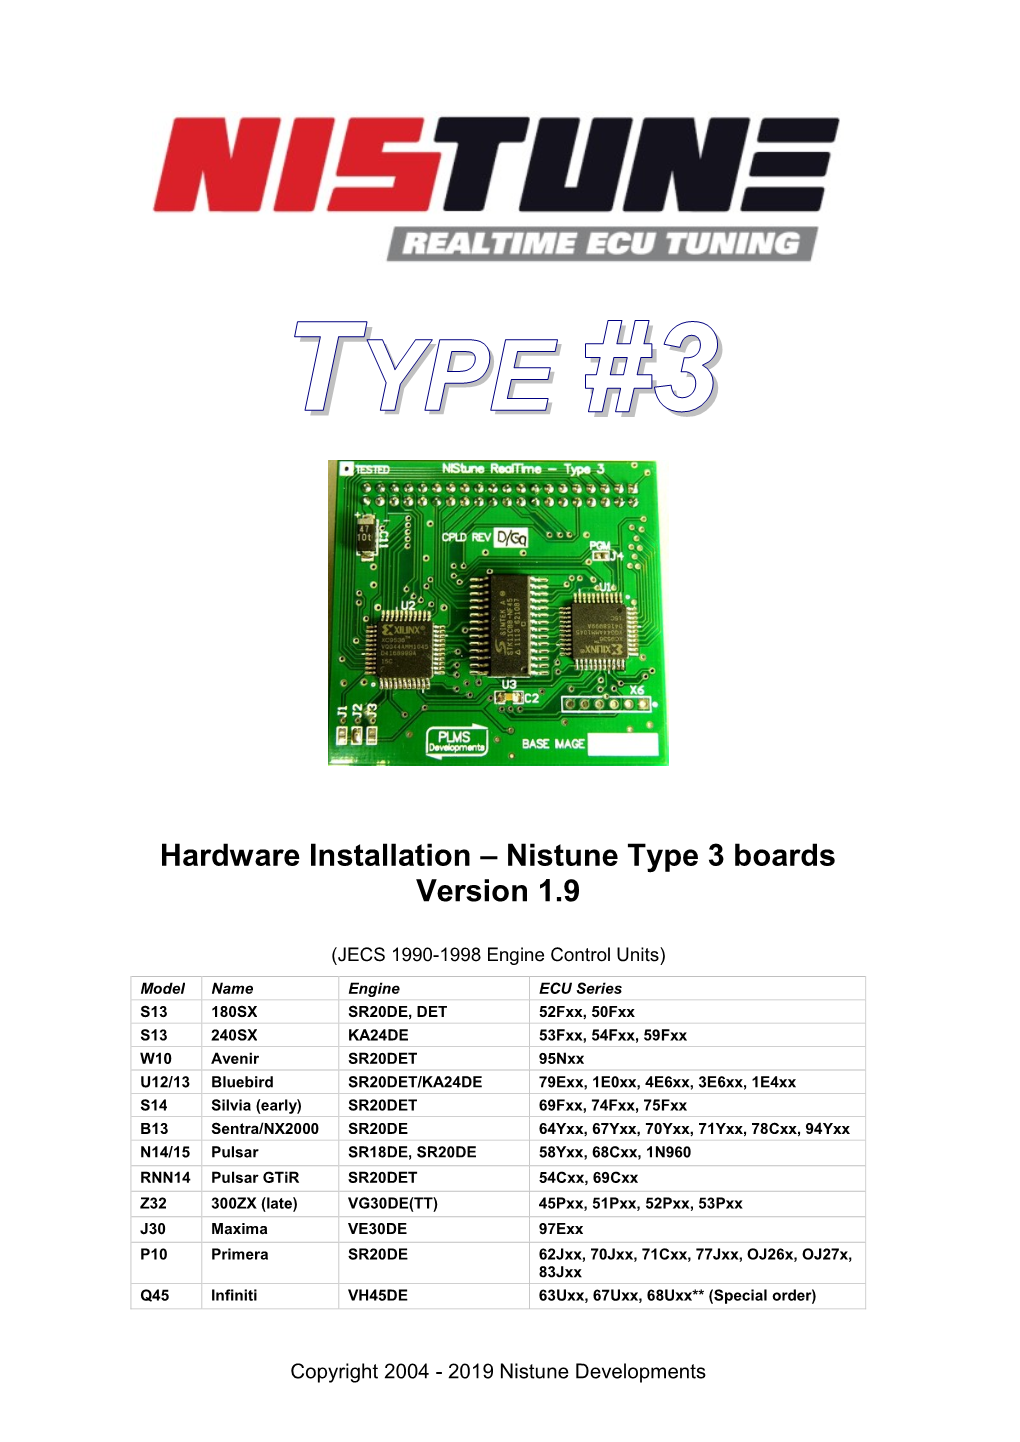 Hardware Installation – Nistune Type 3 Boards Version 1.9